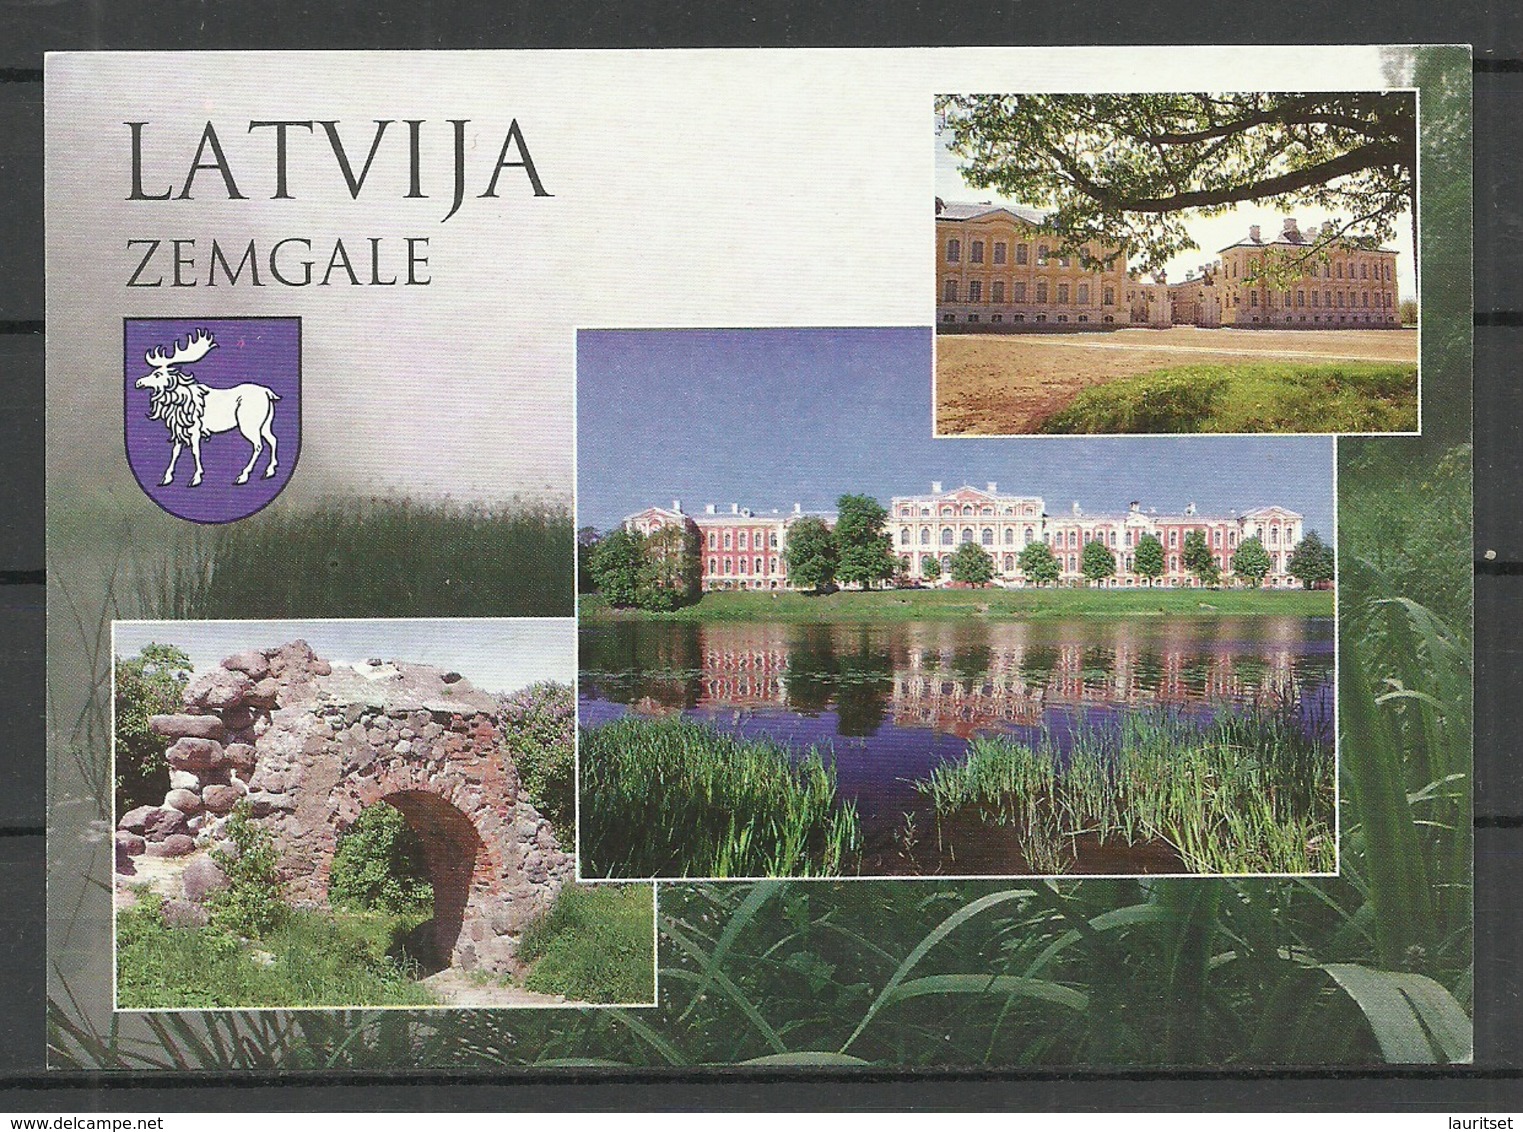 LATVIA Post Card Zemgale Jelgave Rundale Etc Palaces - Latvia